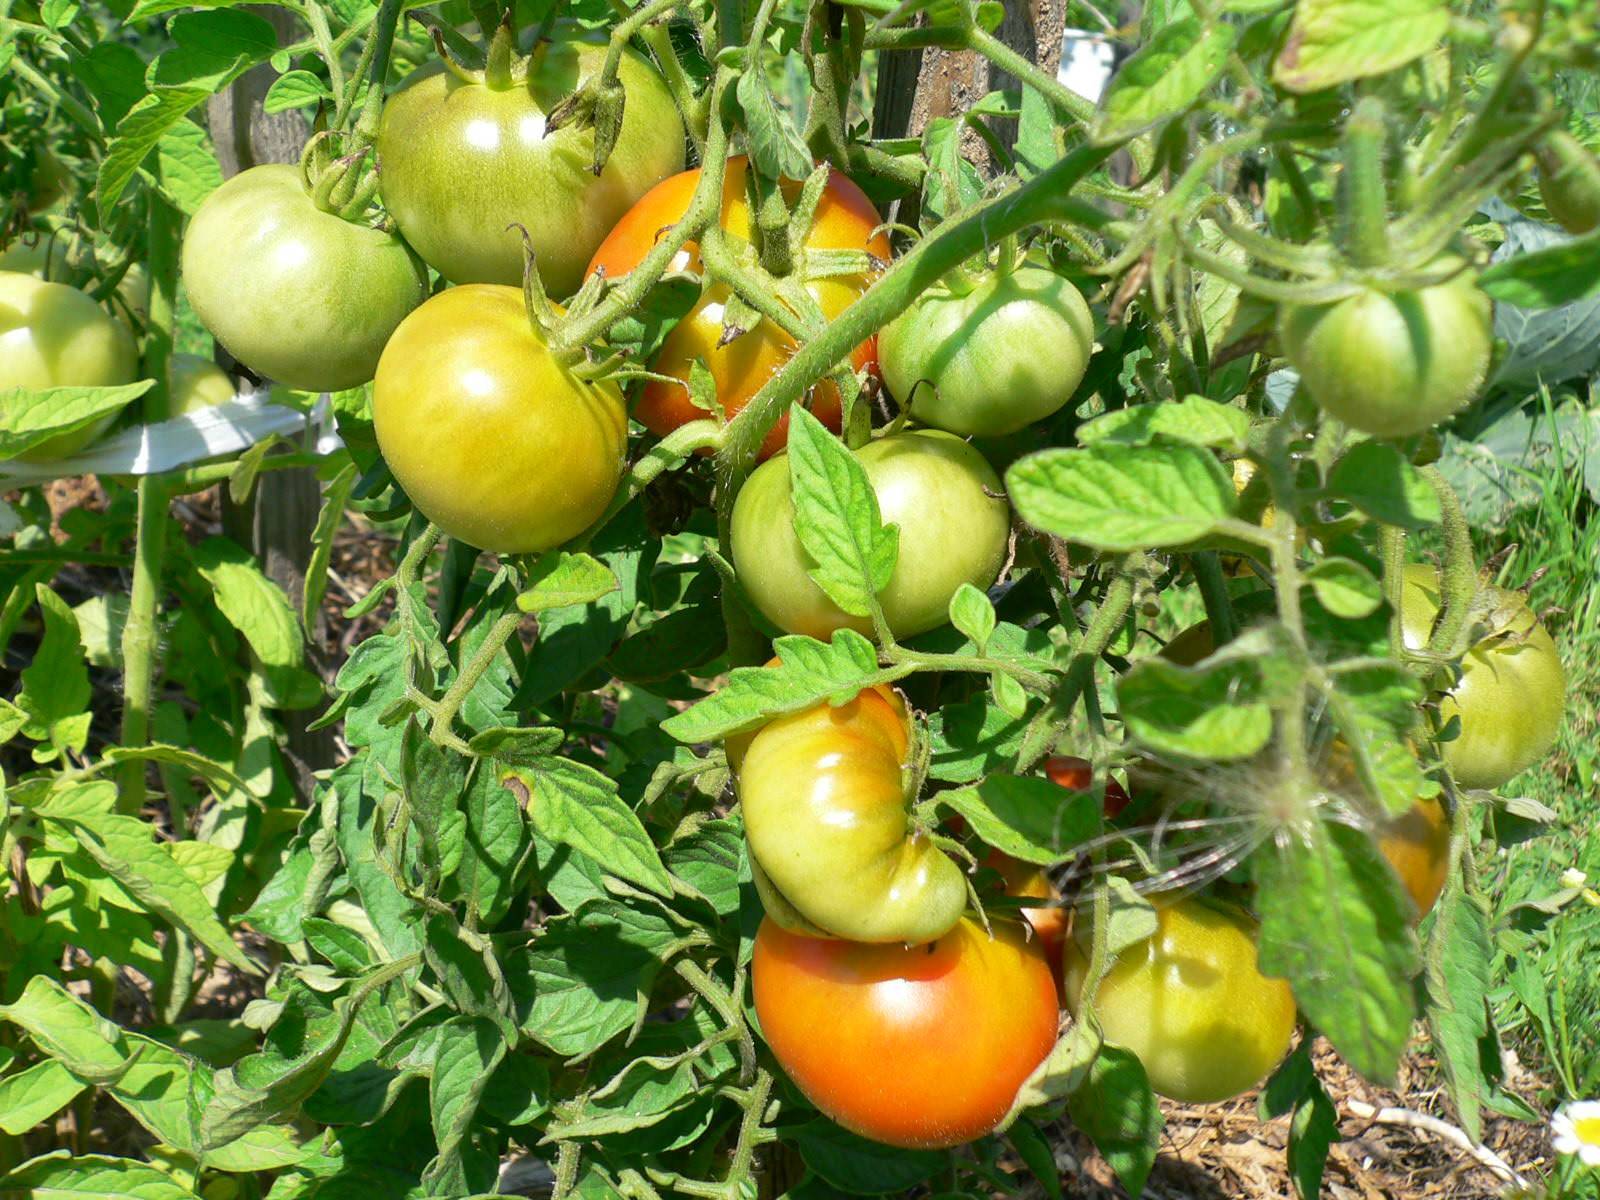 Мои любимые сорта томатов - огород